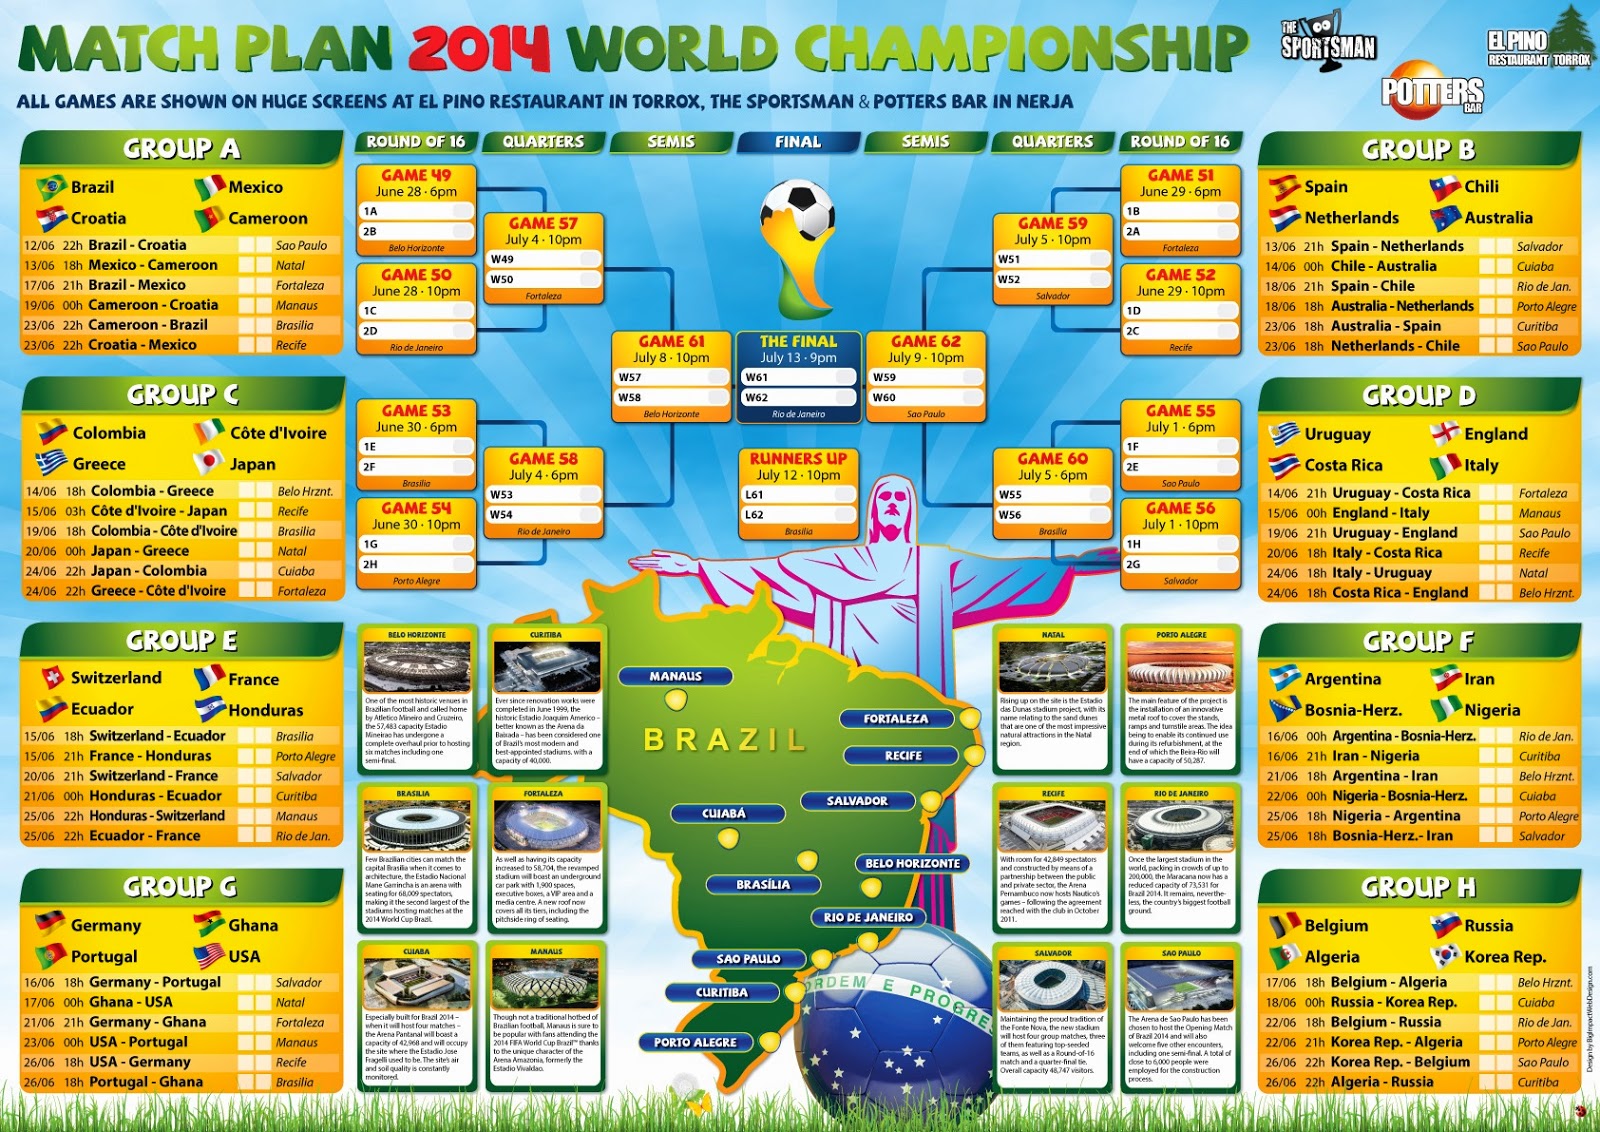 Esquema de cómo se desarrollará el Campeonato del Mundo de Fútbol 2014 en Brasil